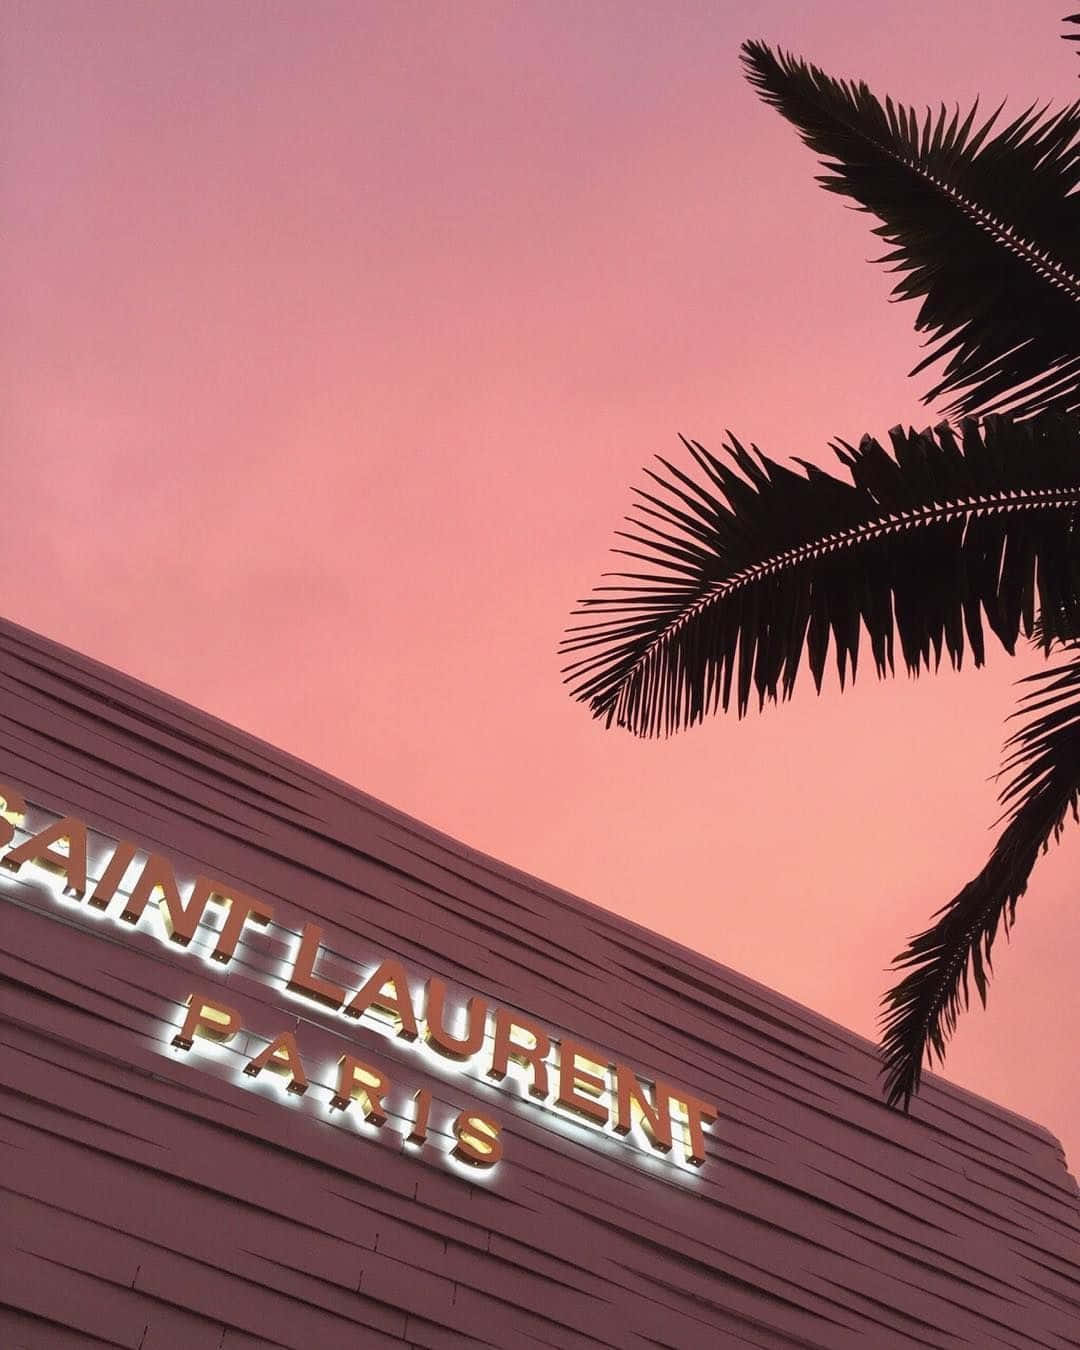 Saint Laurent Paris - en lyserød himmel og palmer Wallpaper